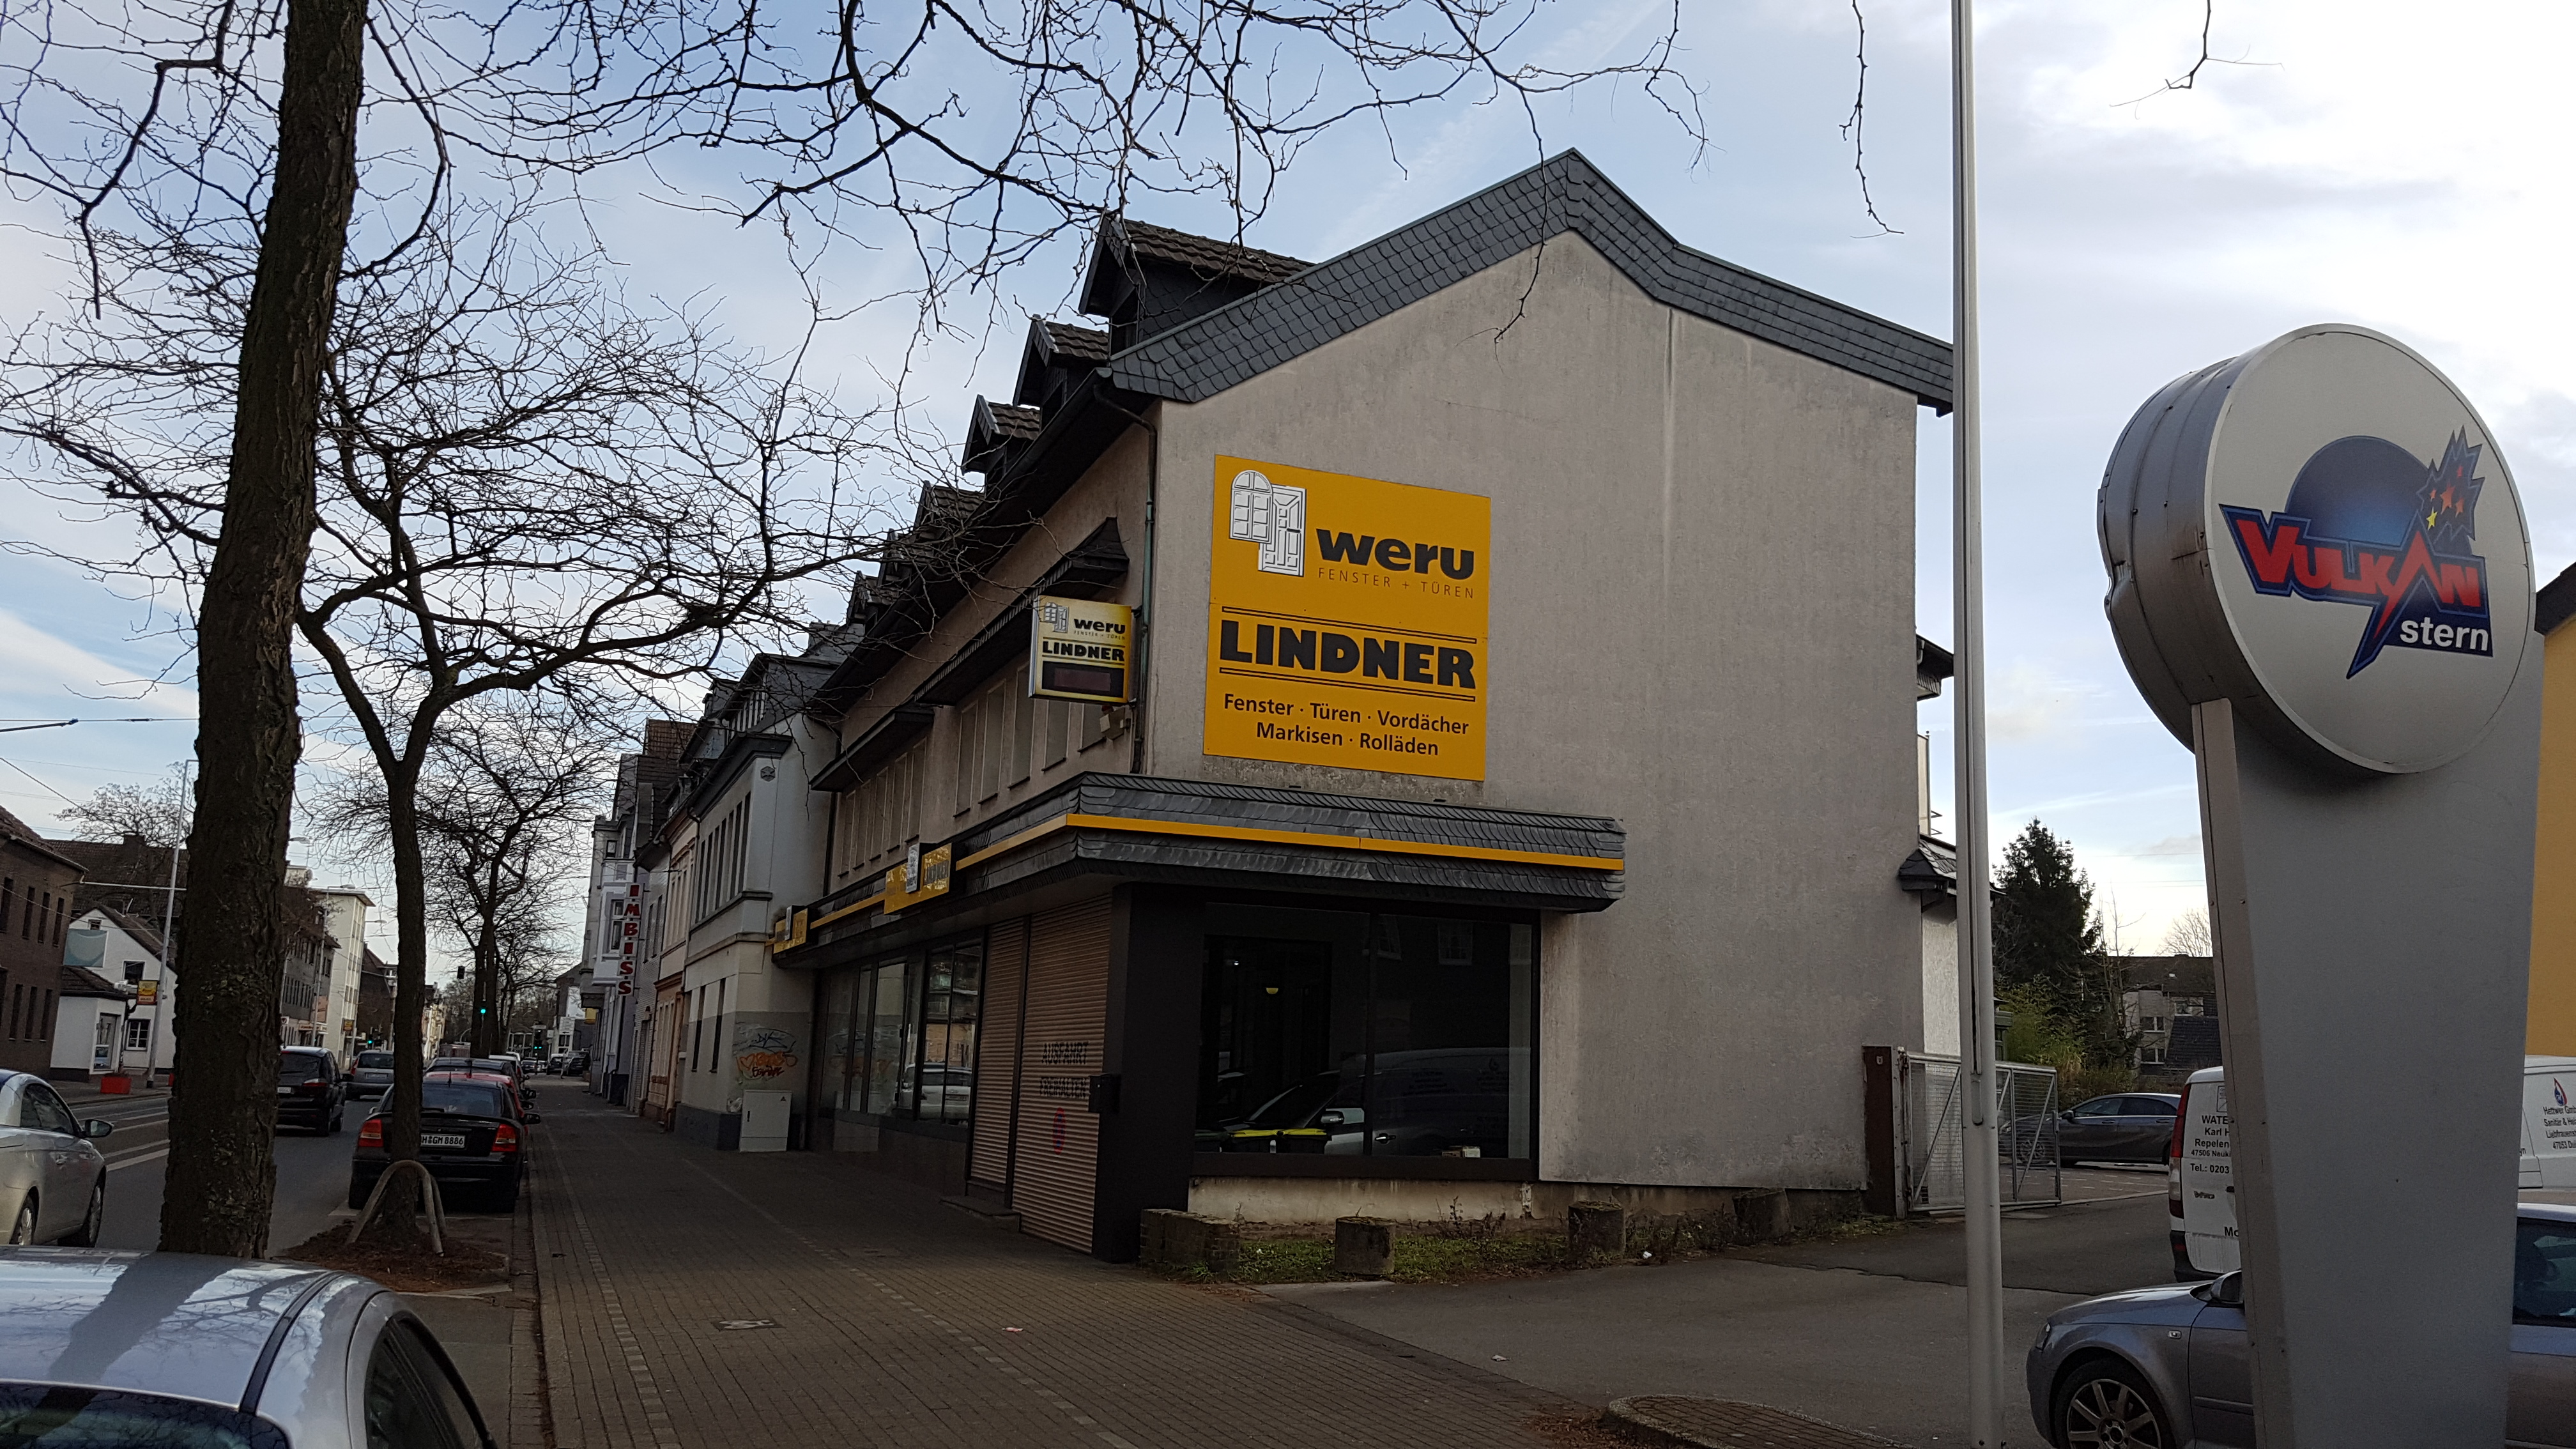 Bild 10 Lindner Weru Bauelemente GmbH in Mülheim an der Ruhr